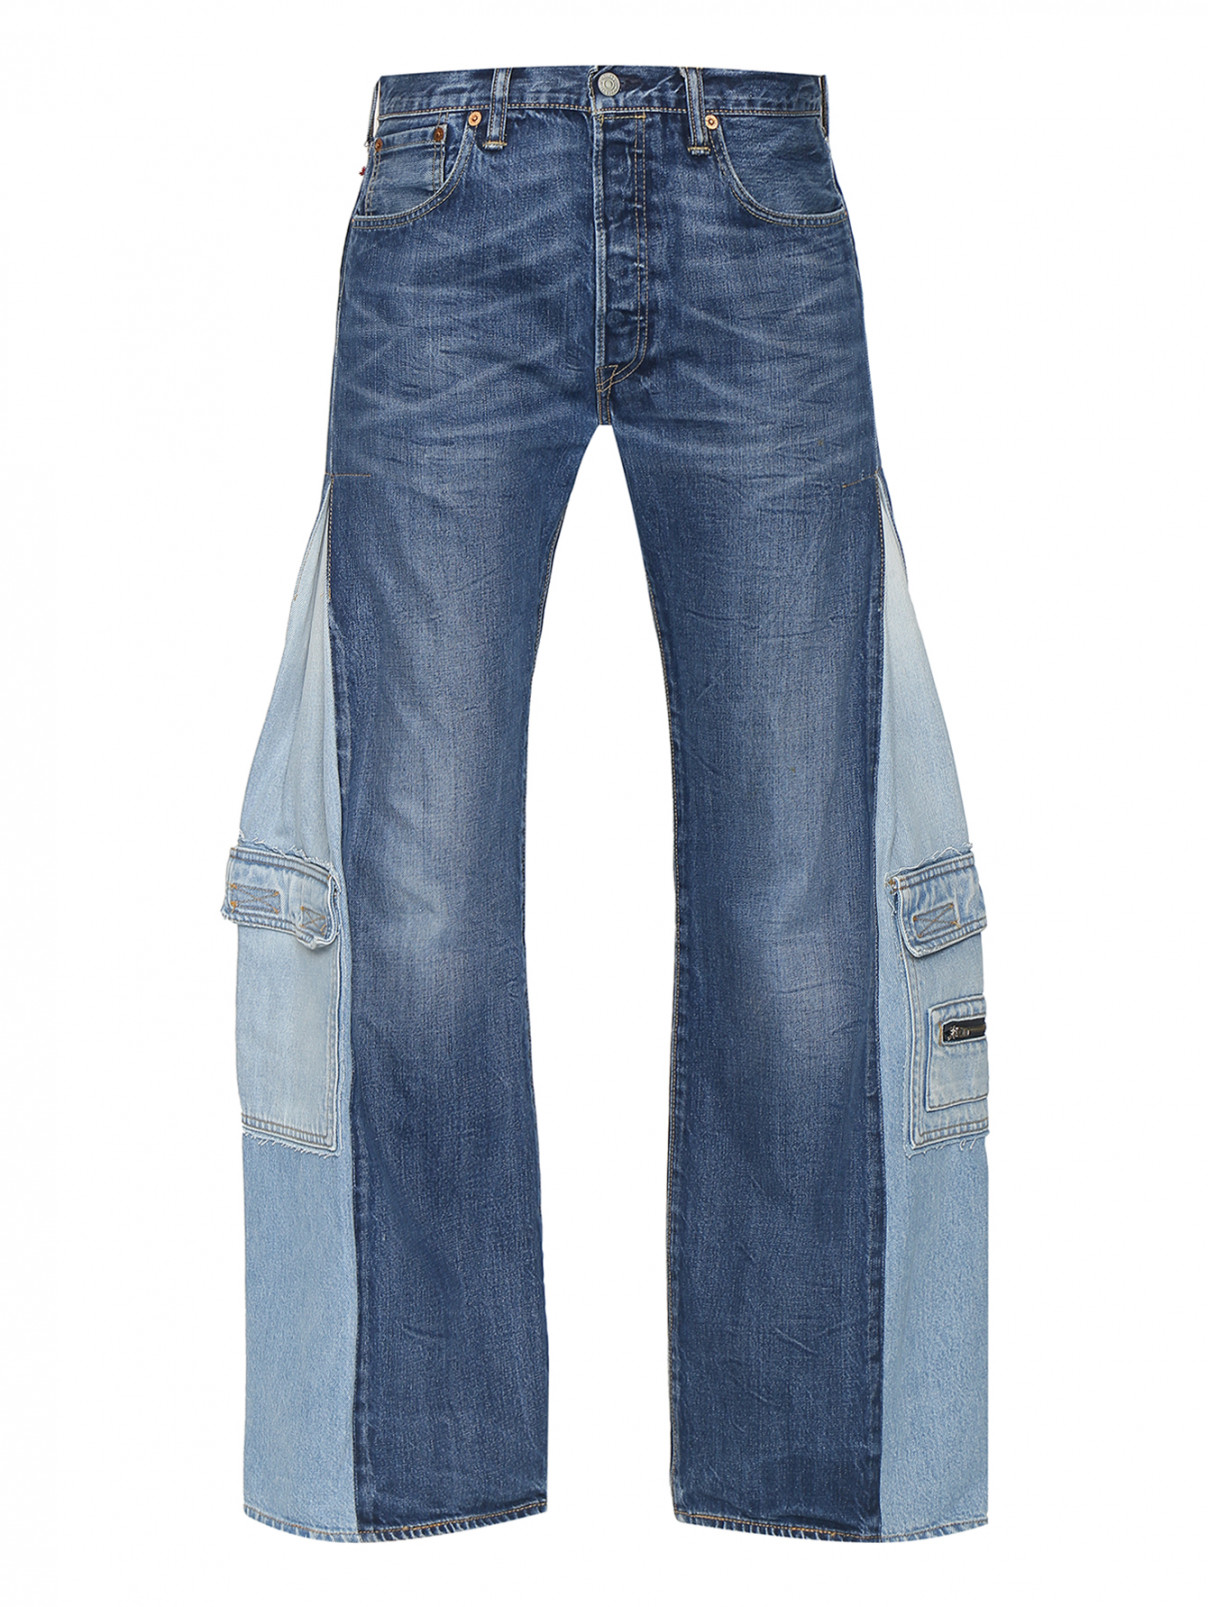 Комбинированные джинсы с карманами Ombra  –  Общий вид  – Цвет:  Синий